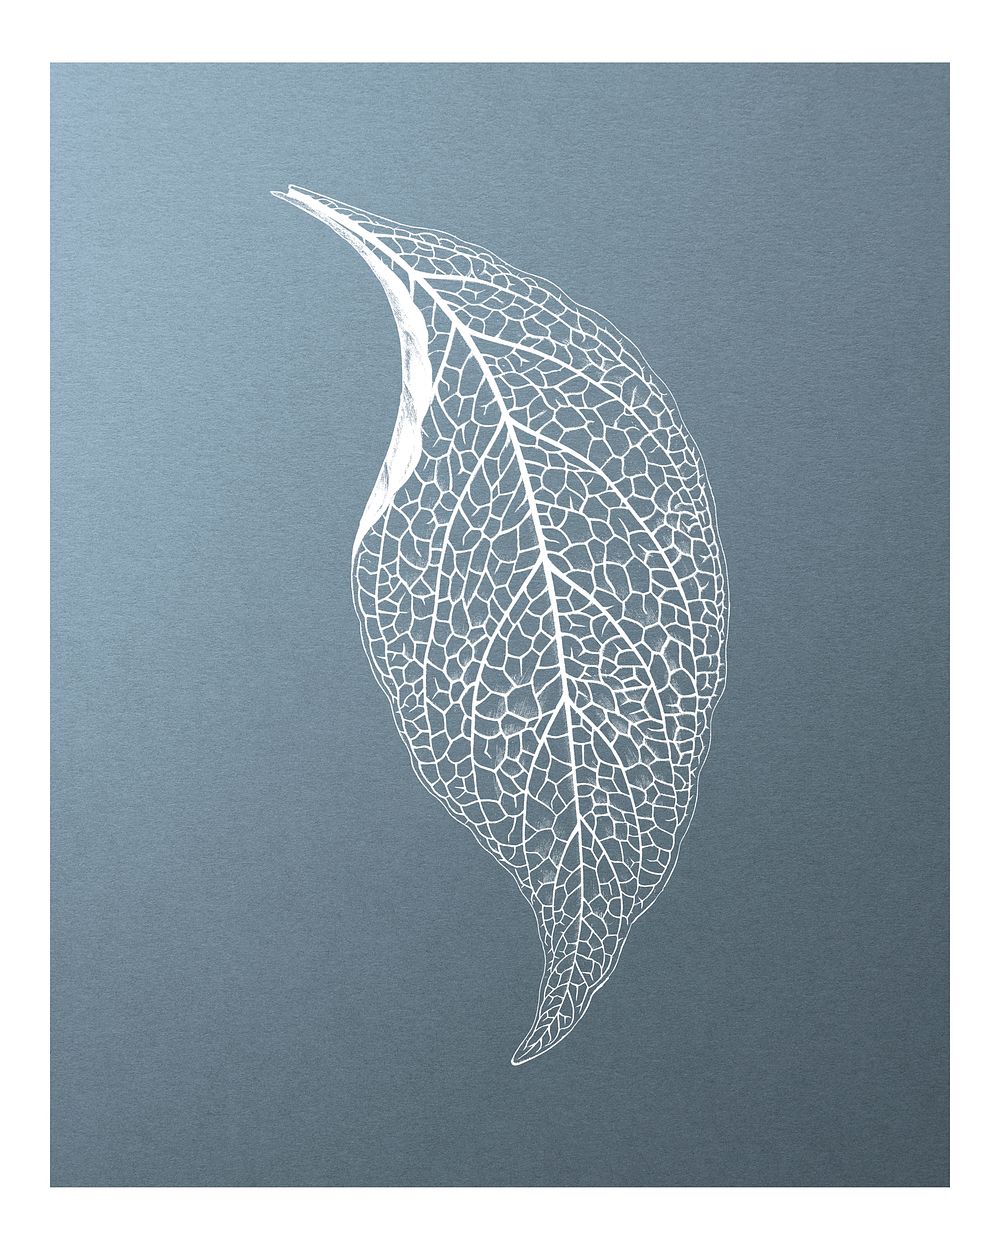 Adelaster Albivenis, engraved leaf illustration wall art print and poster design remix from original artwork of Benjamin…